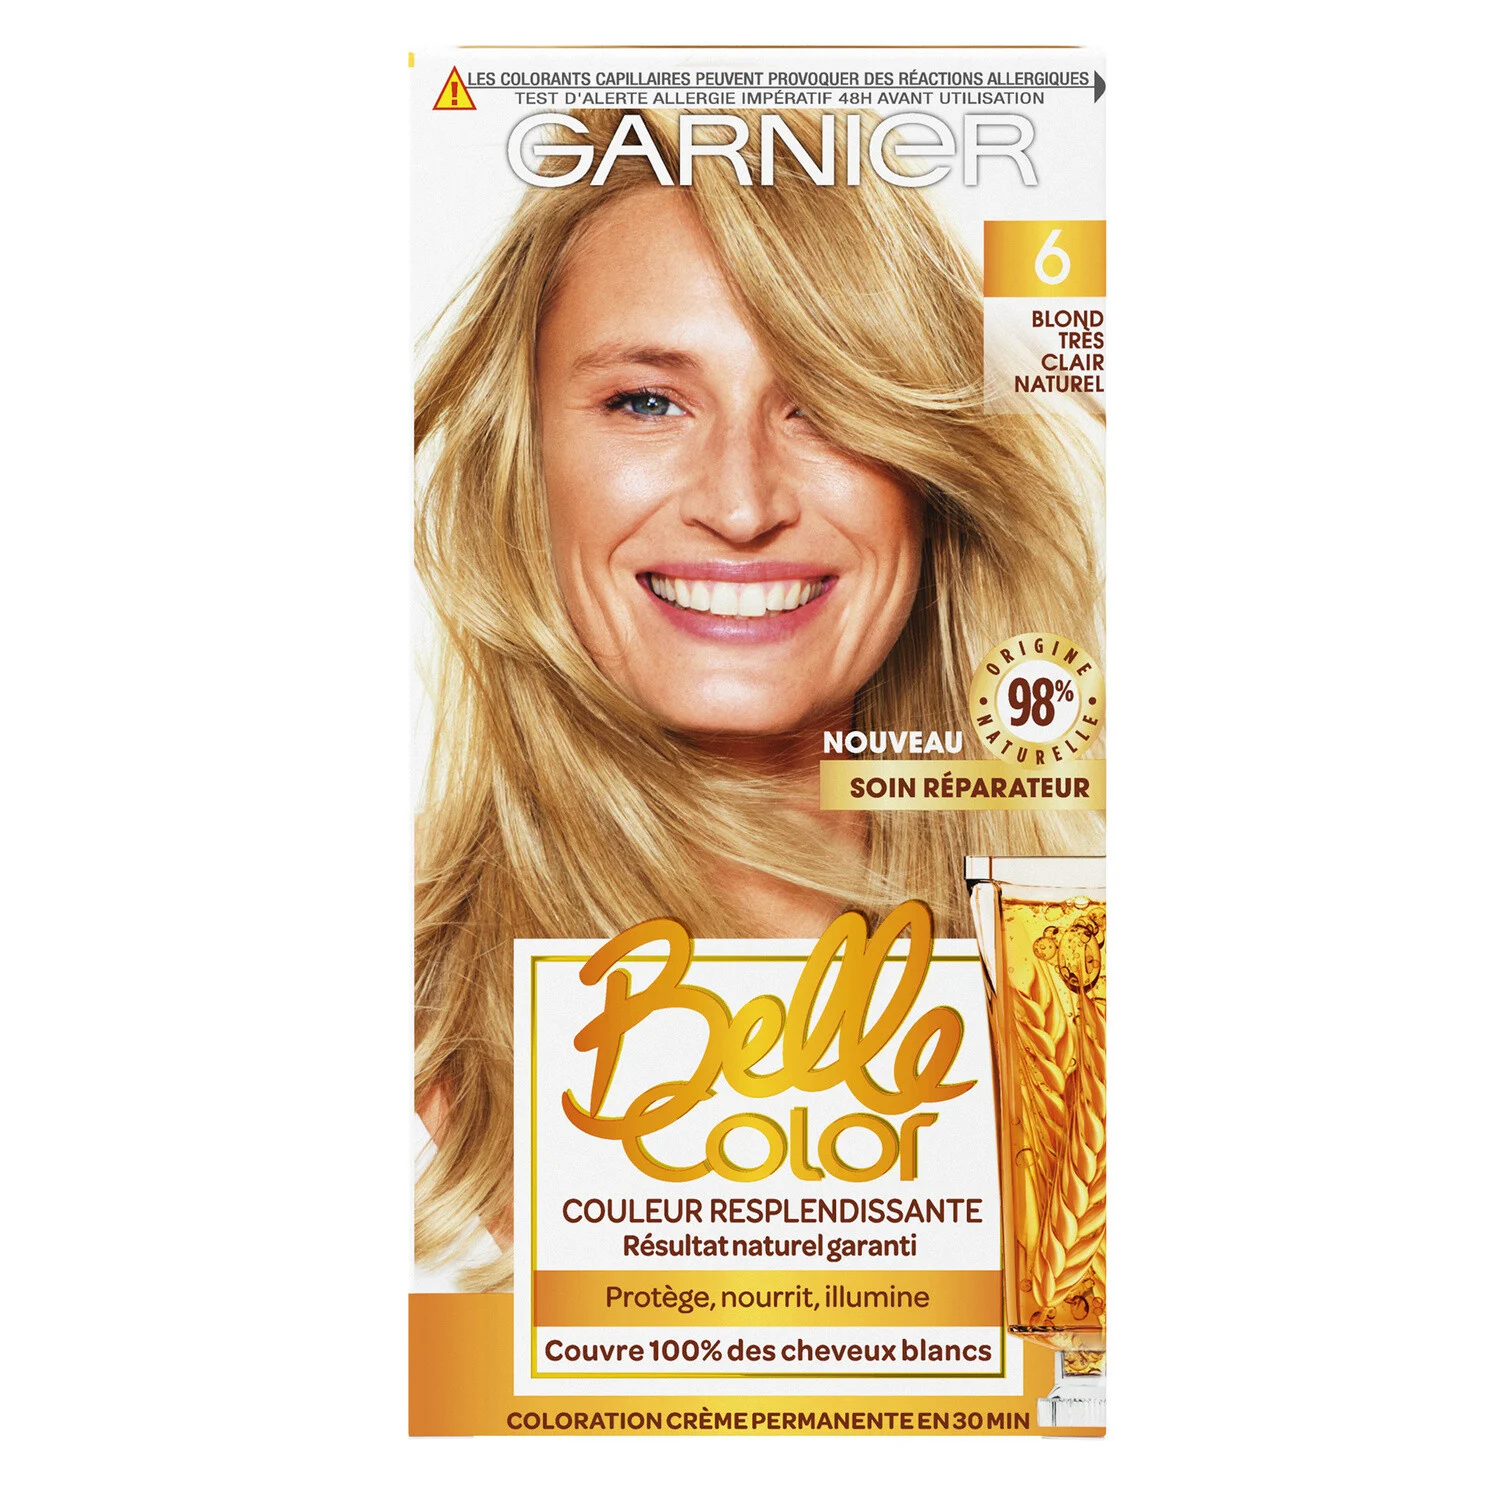 Coloration Cheveux Permanente 6 Blond TrÃ¨s Clair Naturel belle color - GARNIER